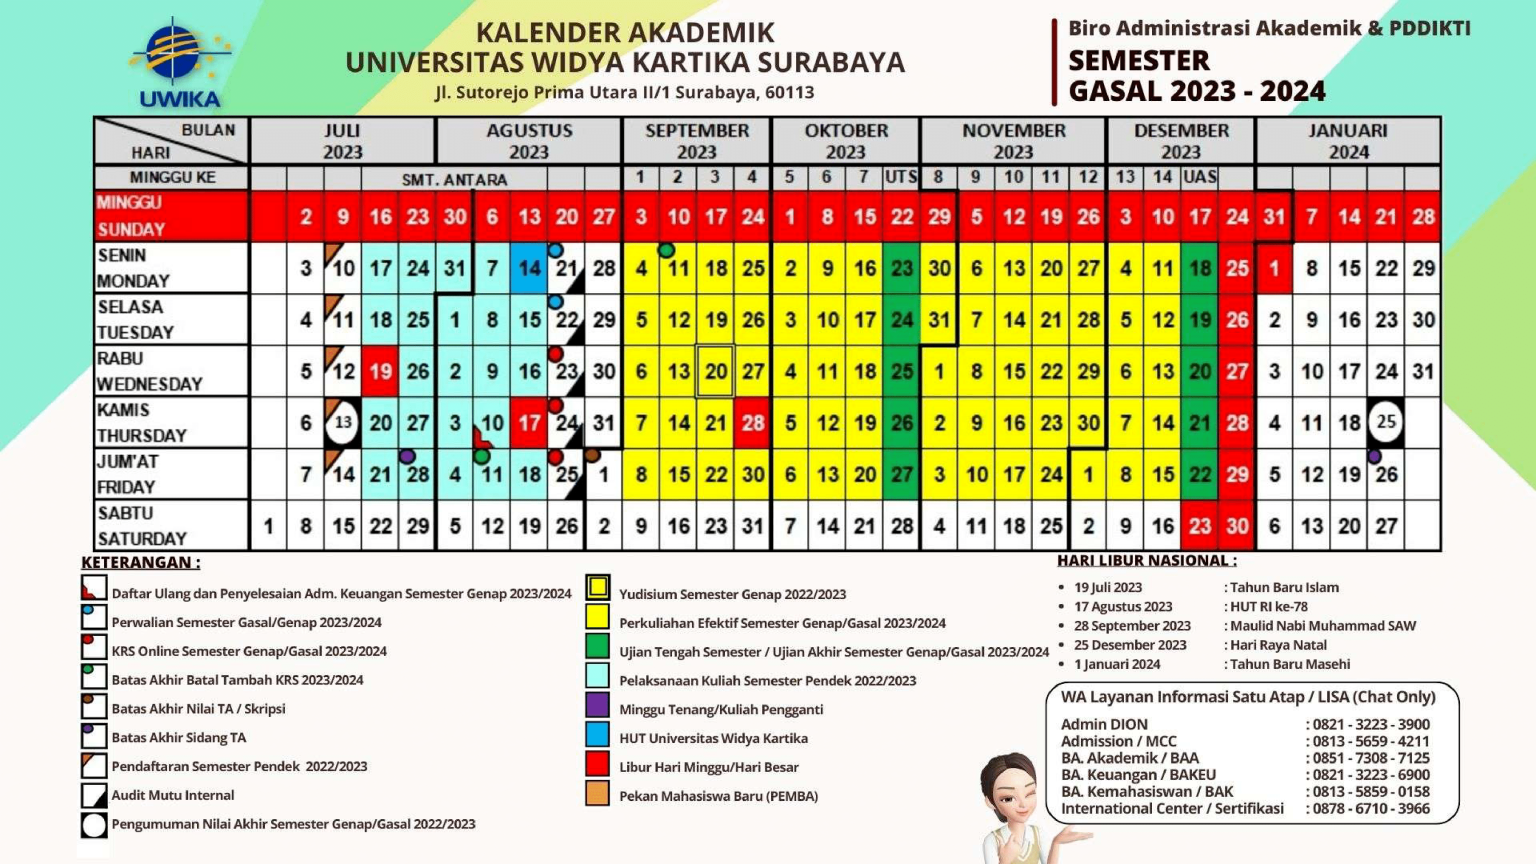 Informasi Kalender Akademik 2023-2024-2